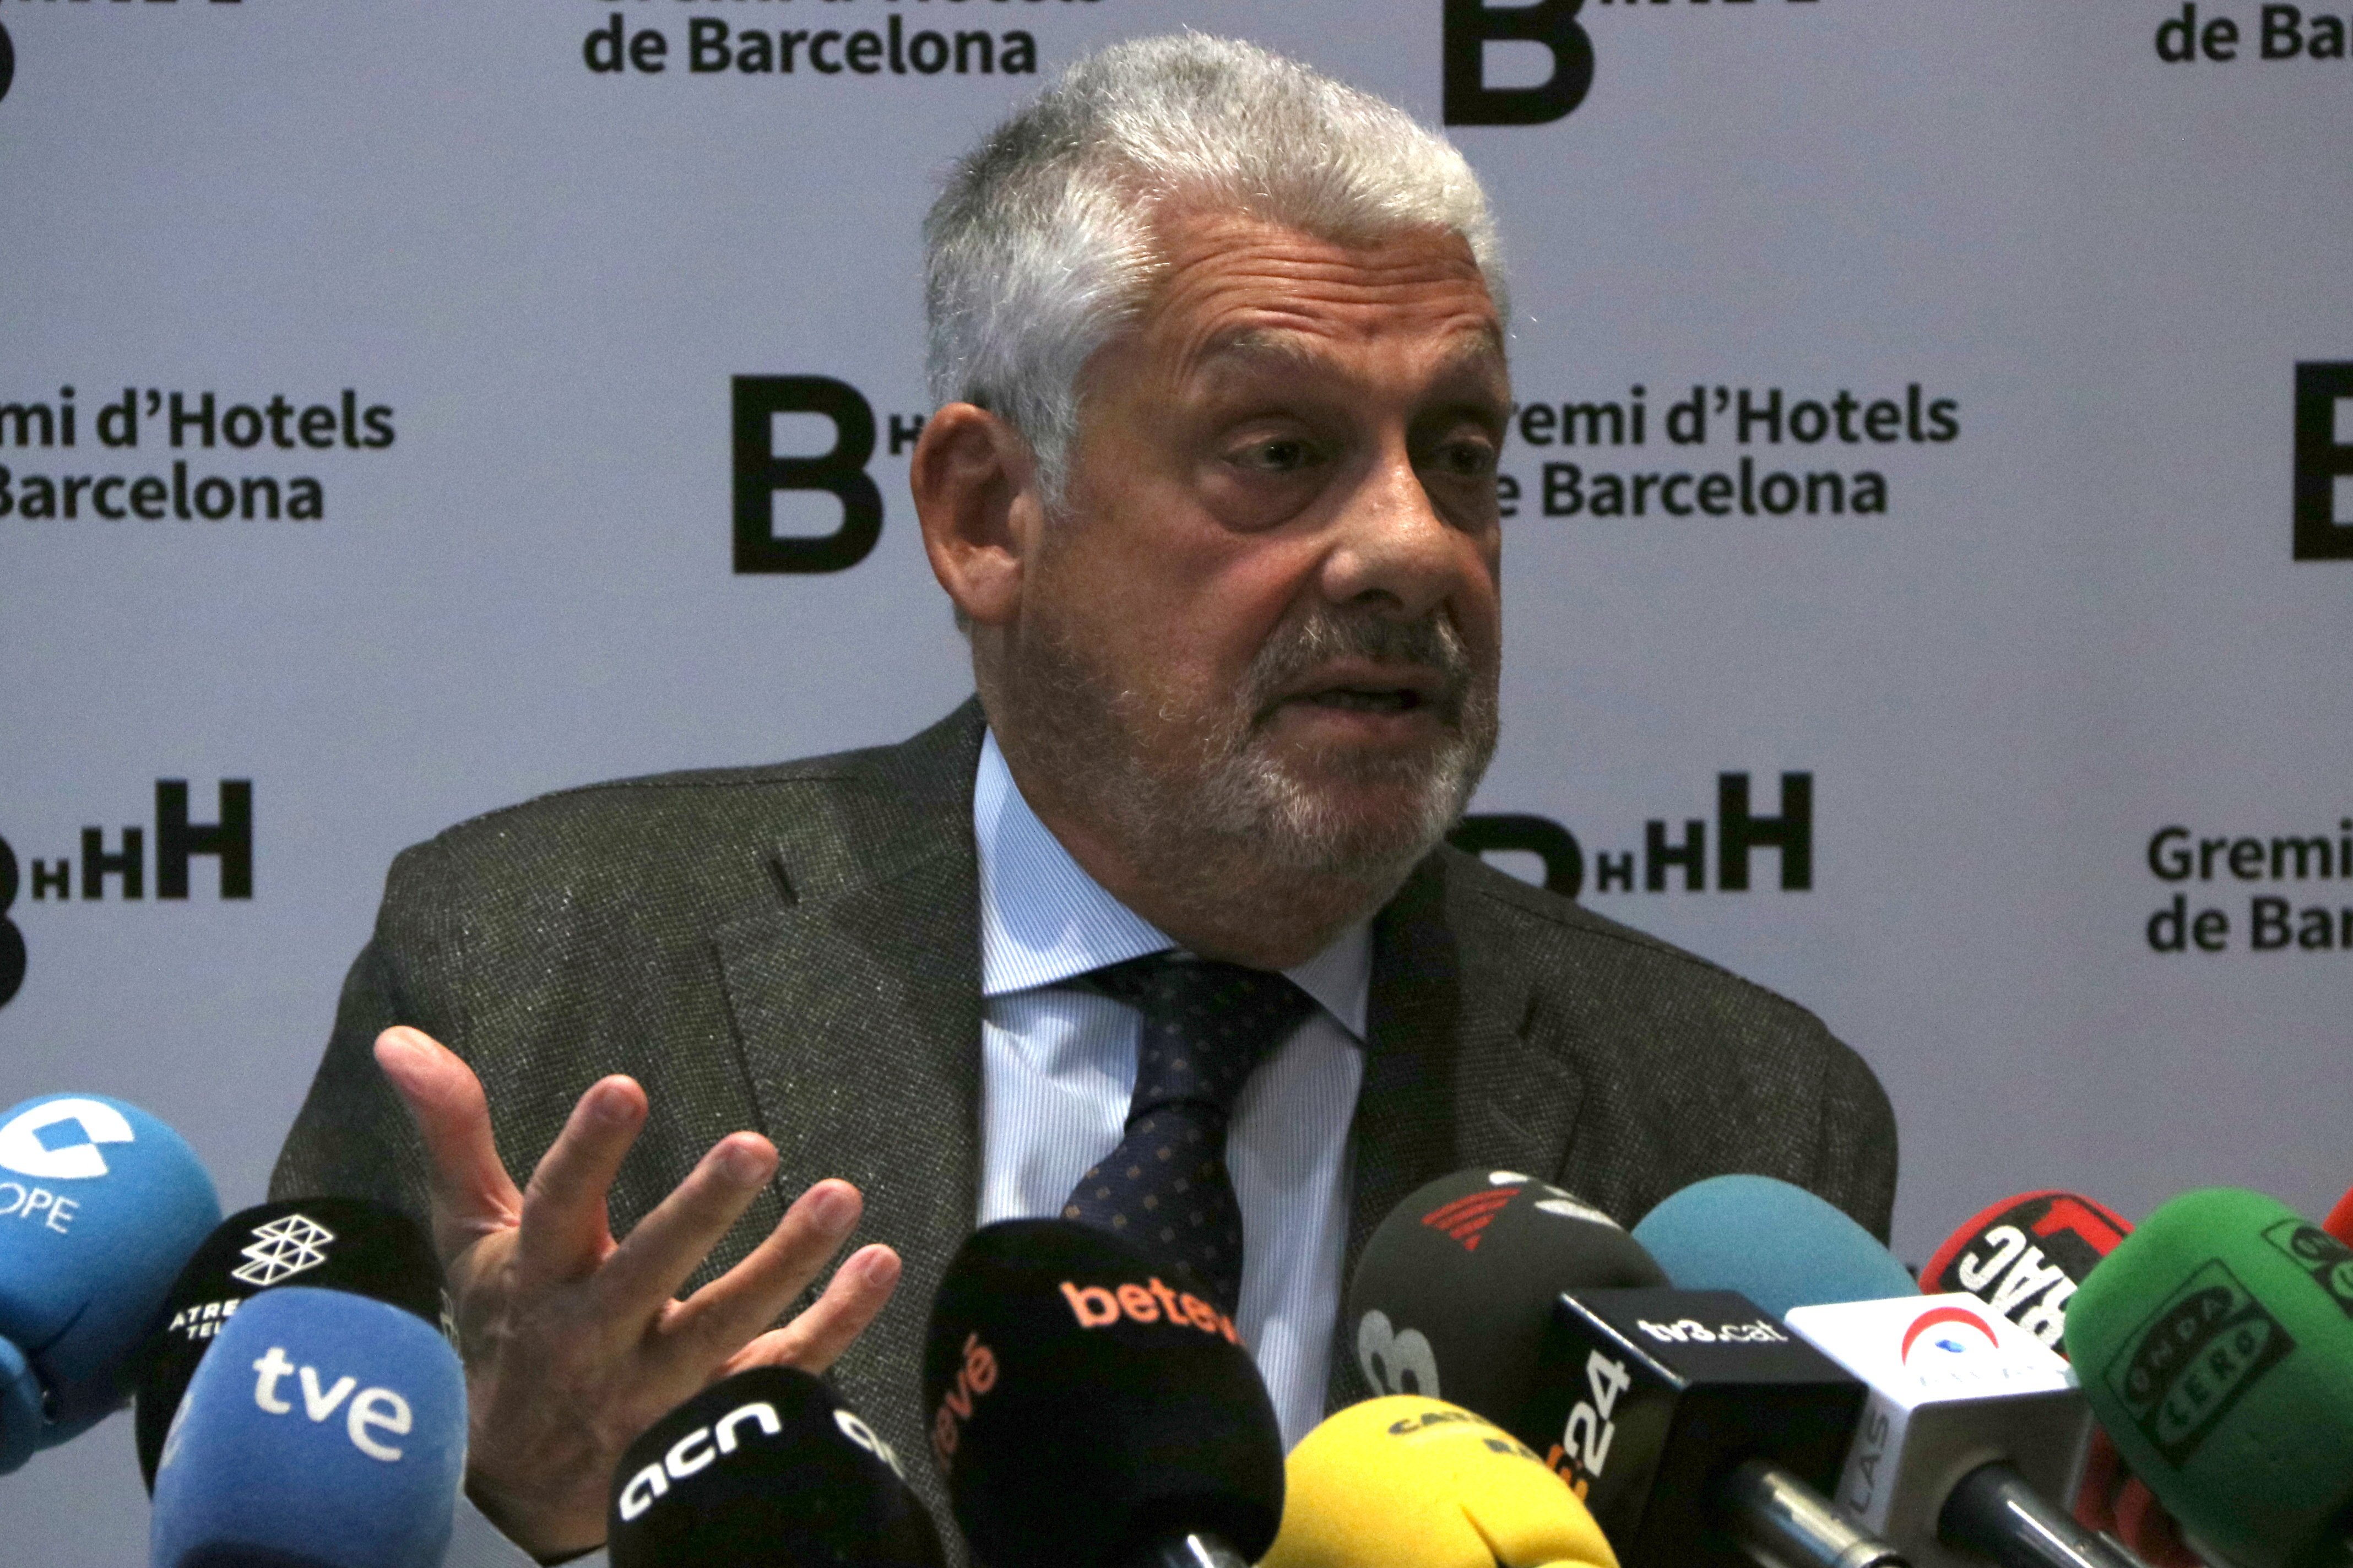 El Gremi d'Hotels urgeix a frenar el descens de turistes a Barcelona